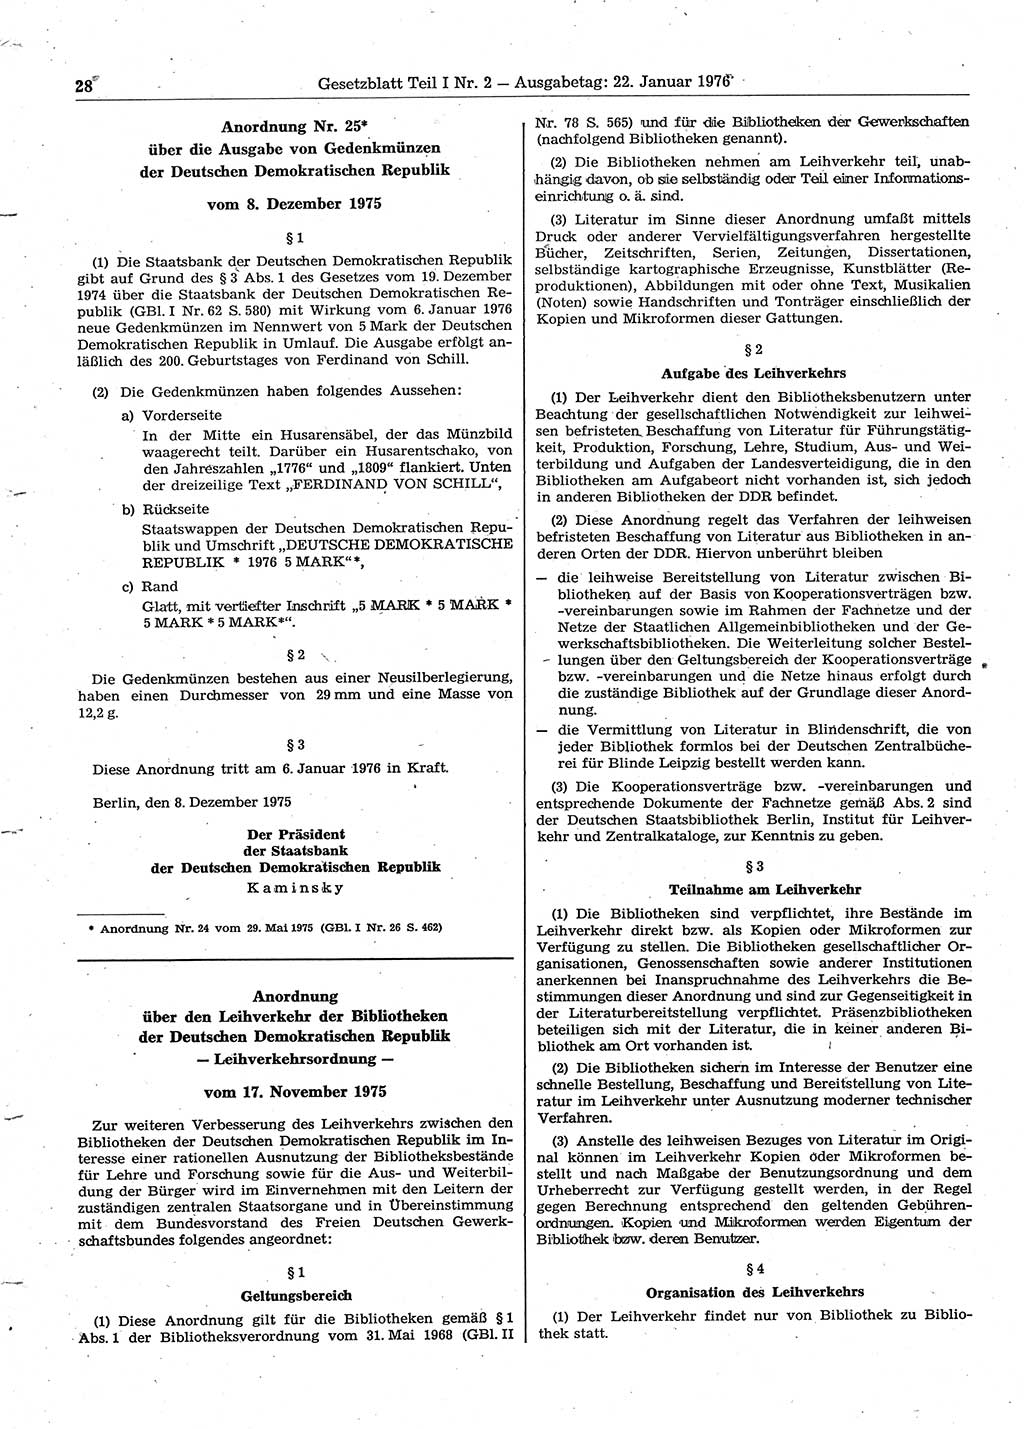 Gesetzblatt (GBl.) der Deutschen Demokratischen Republik (DDR) Teil Ⅰ 1976, Seite 28 (GBl. DDR Ⅰ 1976, S. 28)